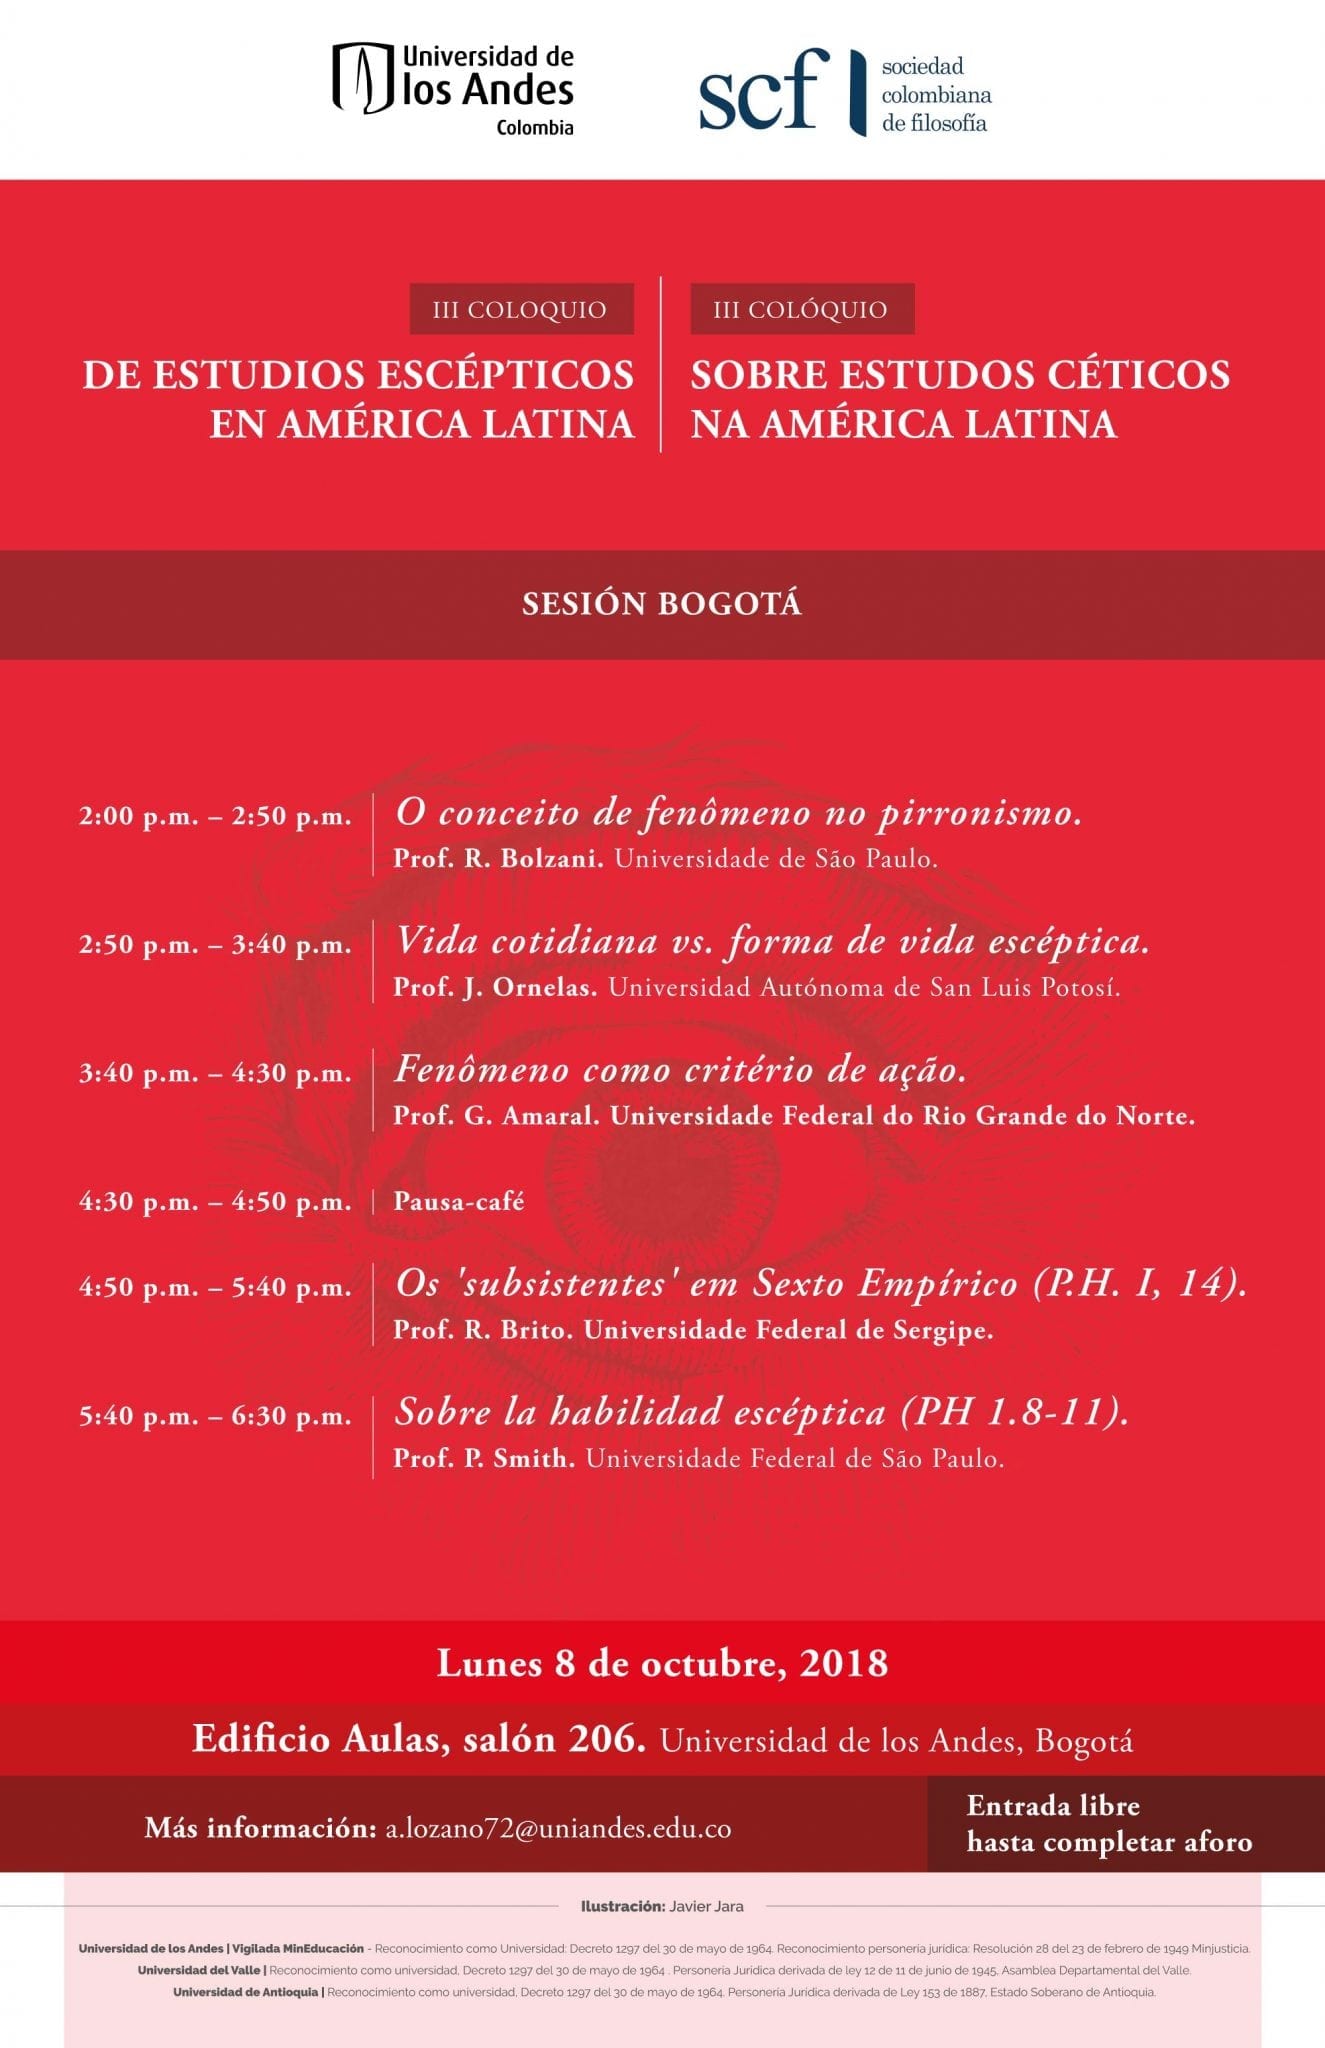 III Coloquio de estudios escépticos en América Latina